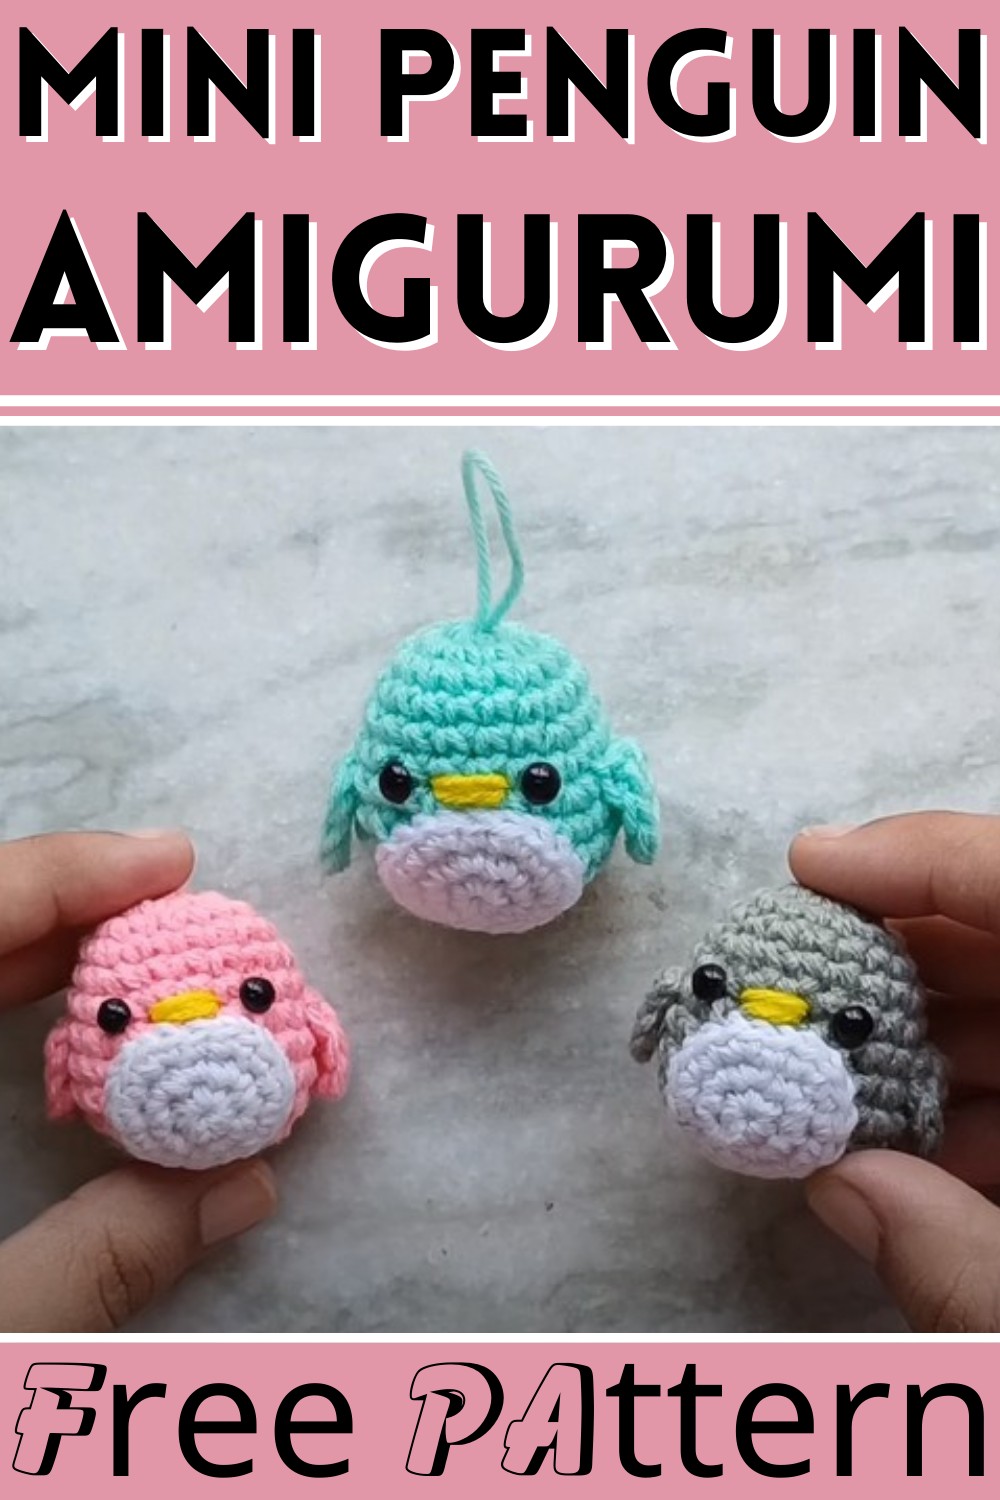 Mini Penguin Amigurumi